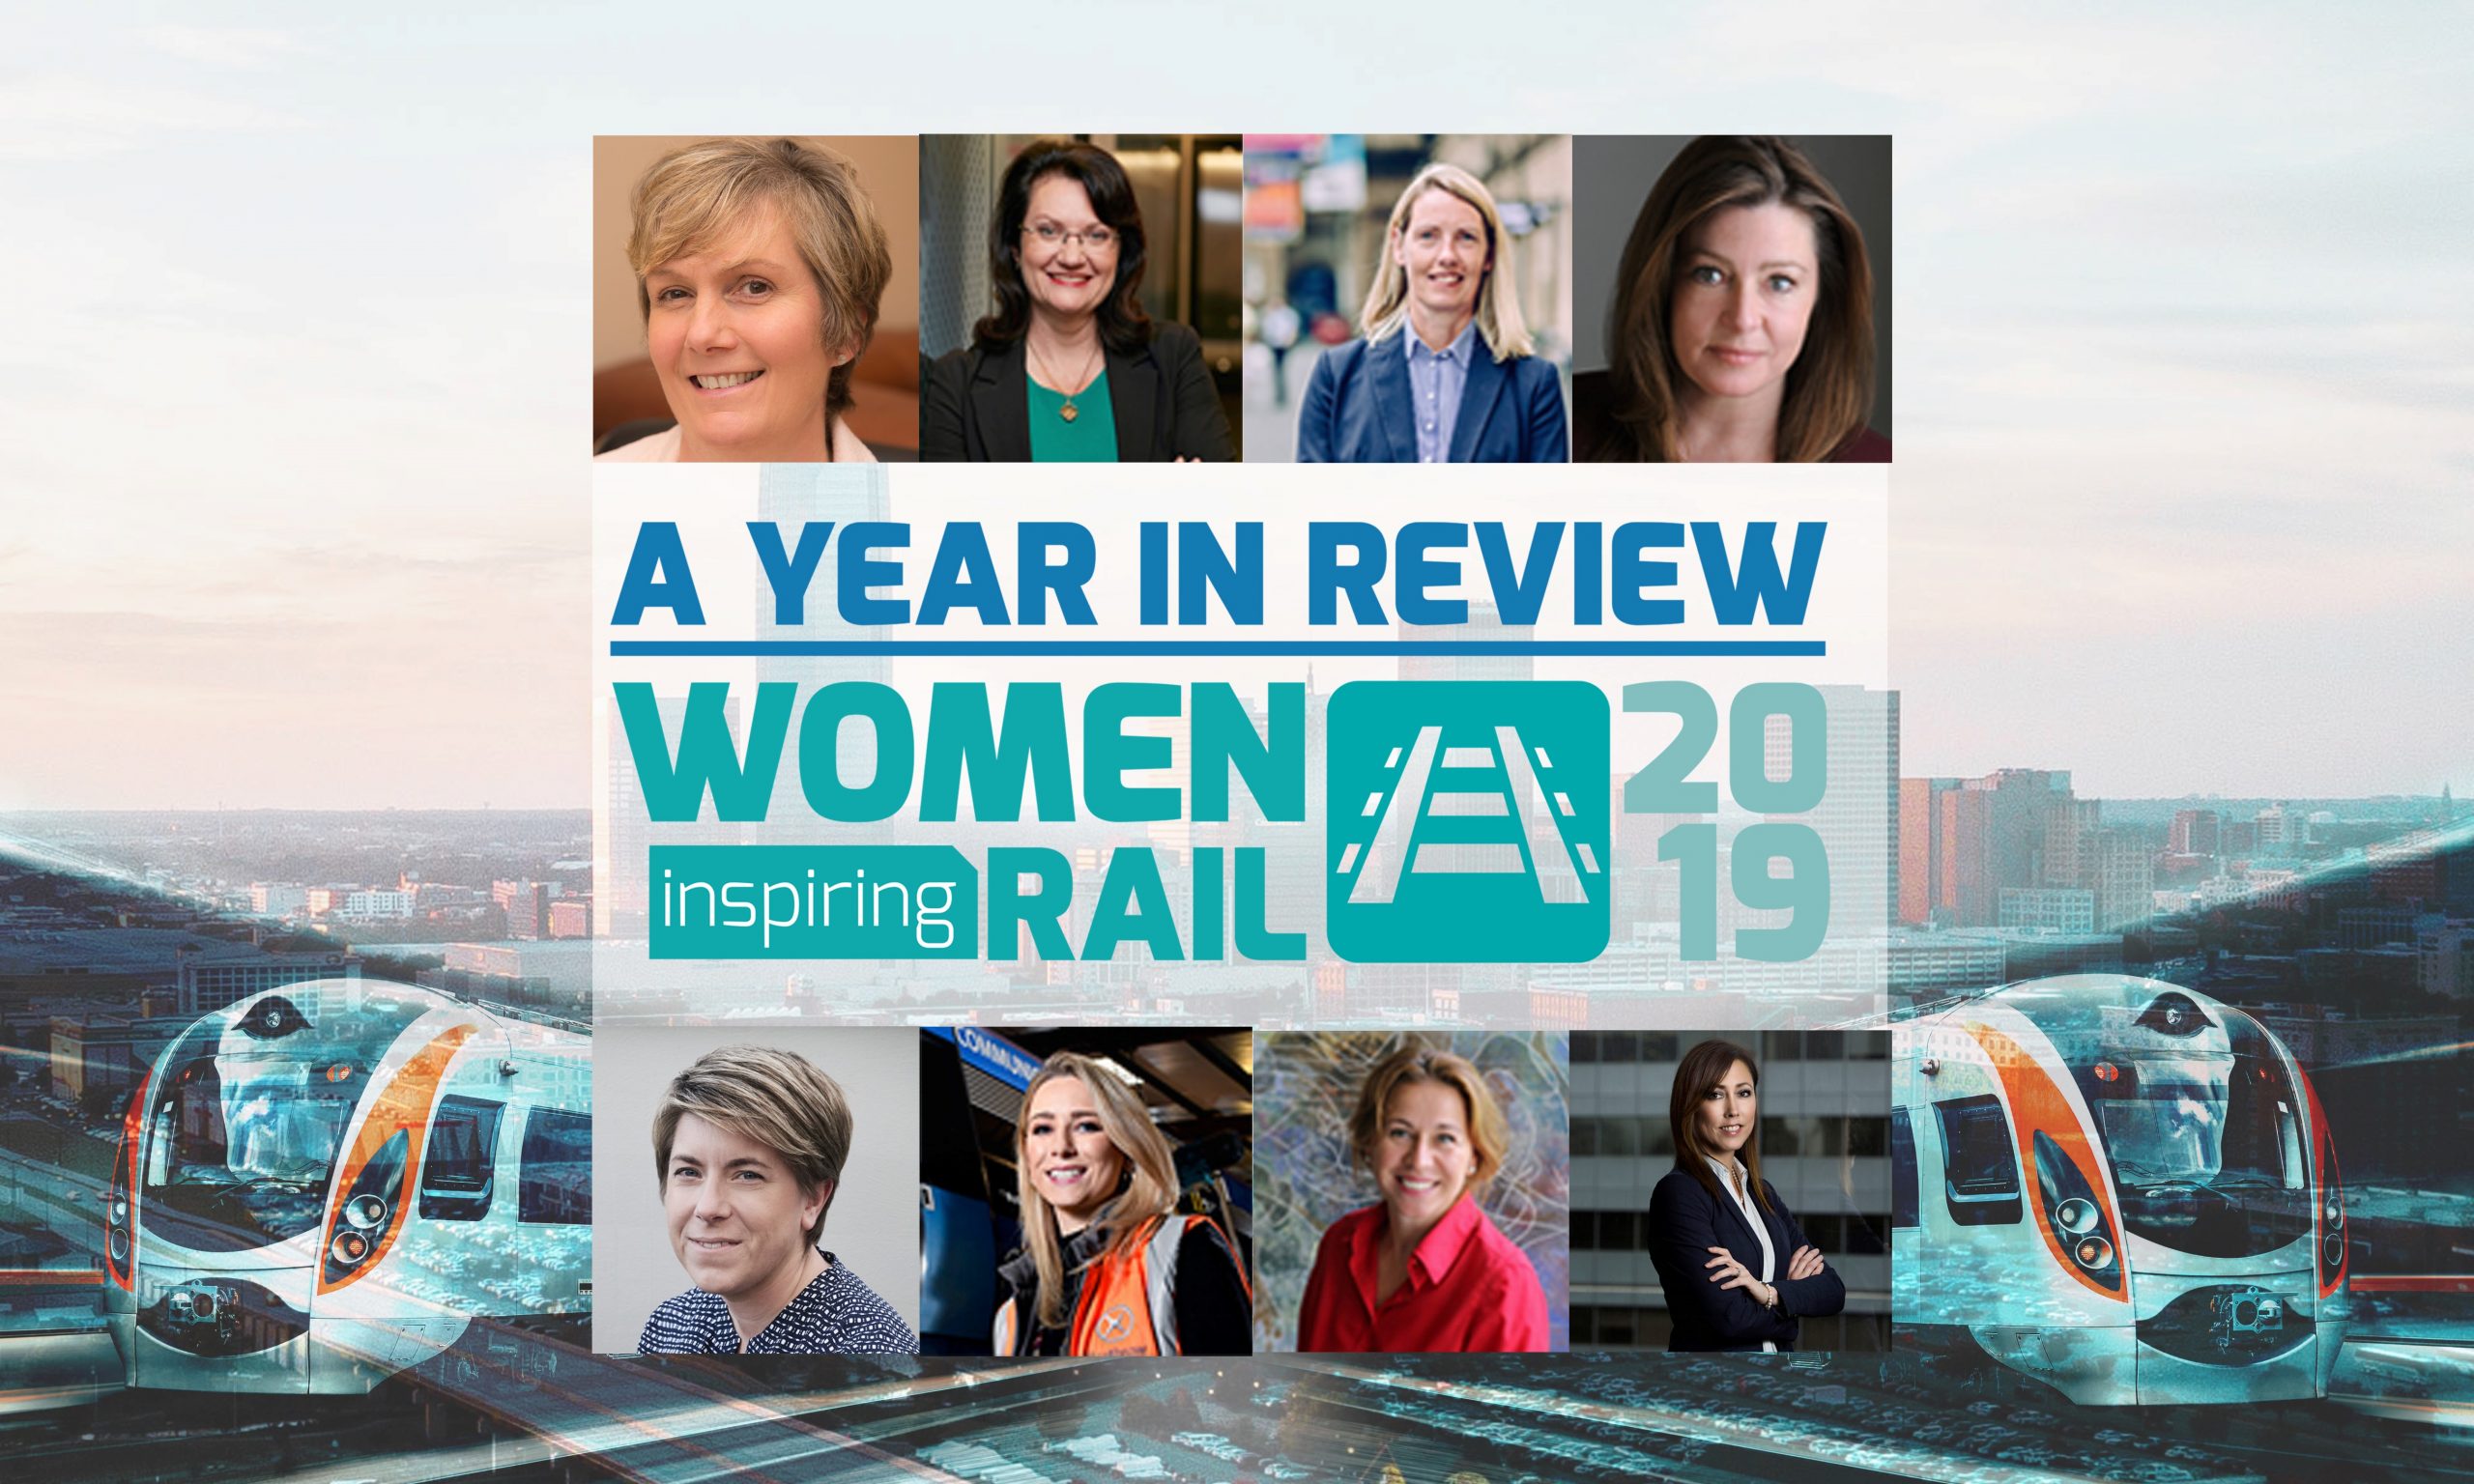 女性激励铁路:一年回顾